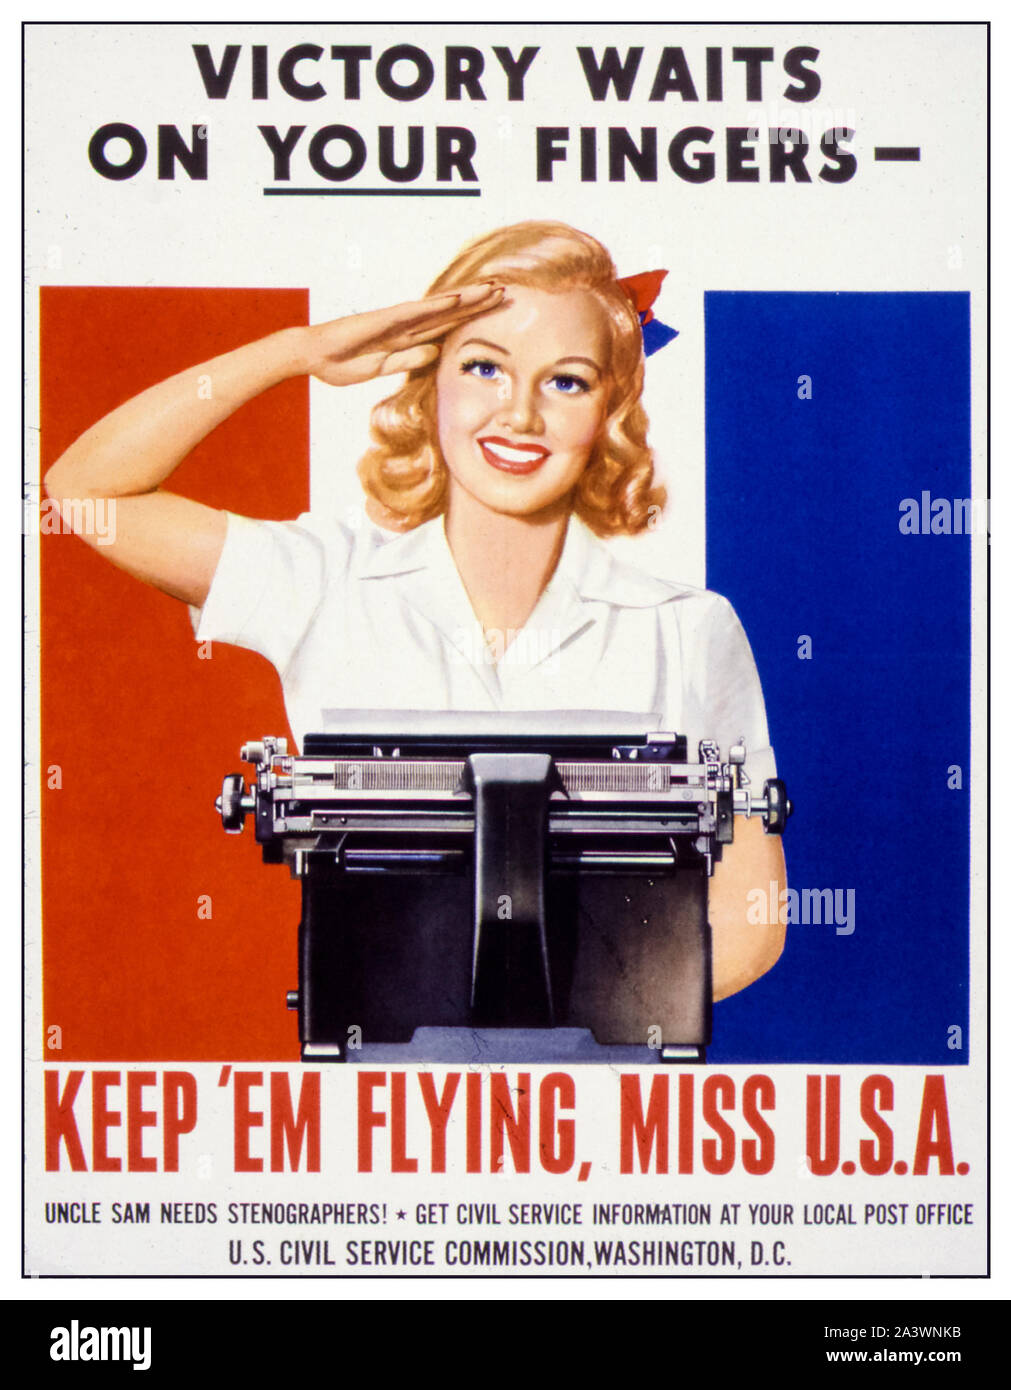 American, US, WW2, Rekrutierungsplakat für weibliche Sekretärin, Victory Waits on Your Fingers, Keep 'Em Flying Miss USA, (Frau hinter Schreibmaschine), 1941-1945 Stockfoto